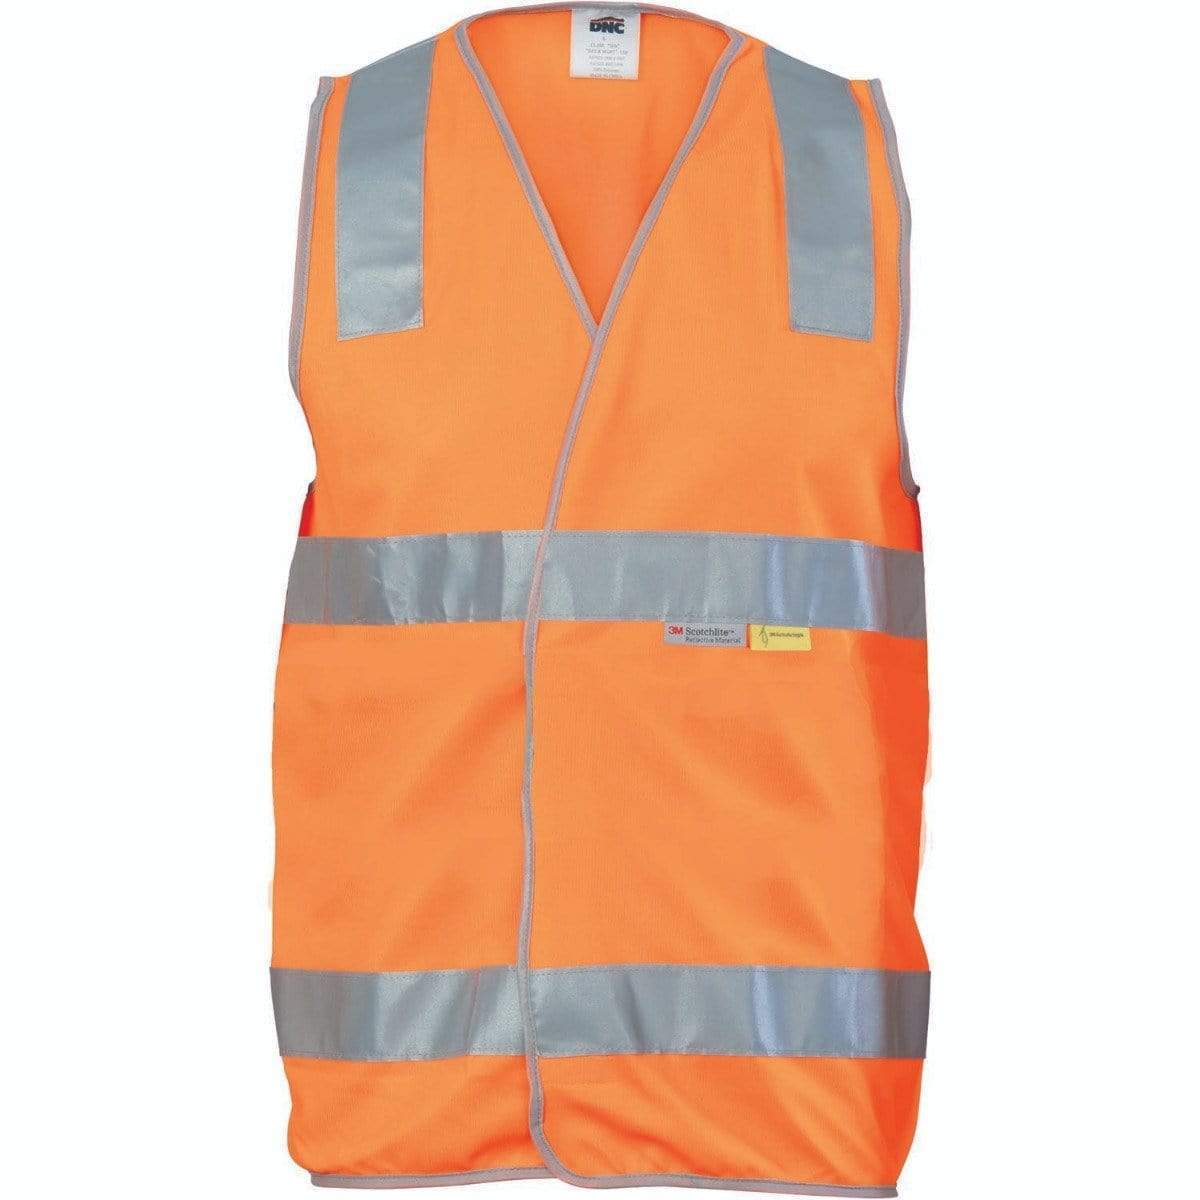 Dnc Workwear Day/night Hi-vis Safety Vest - 3803 Work Wear DNC Workwear Orange S 